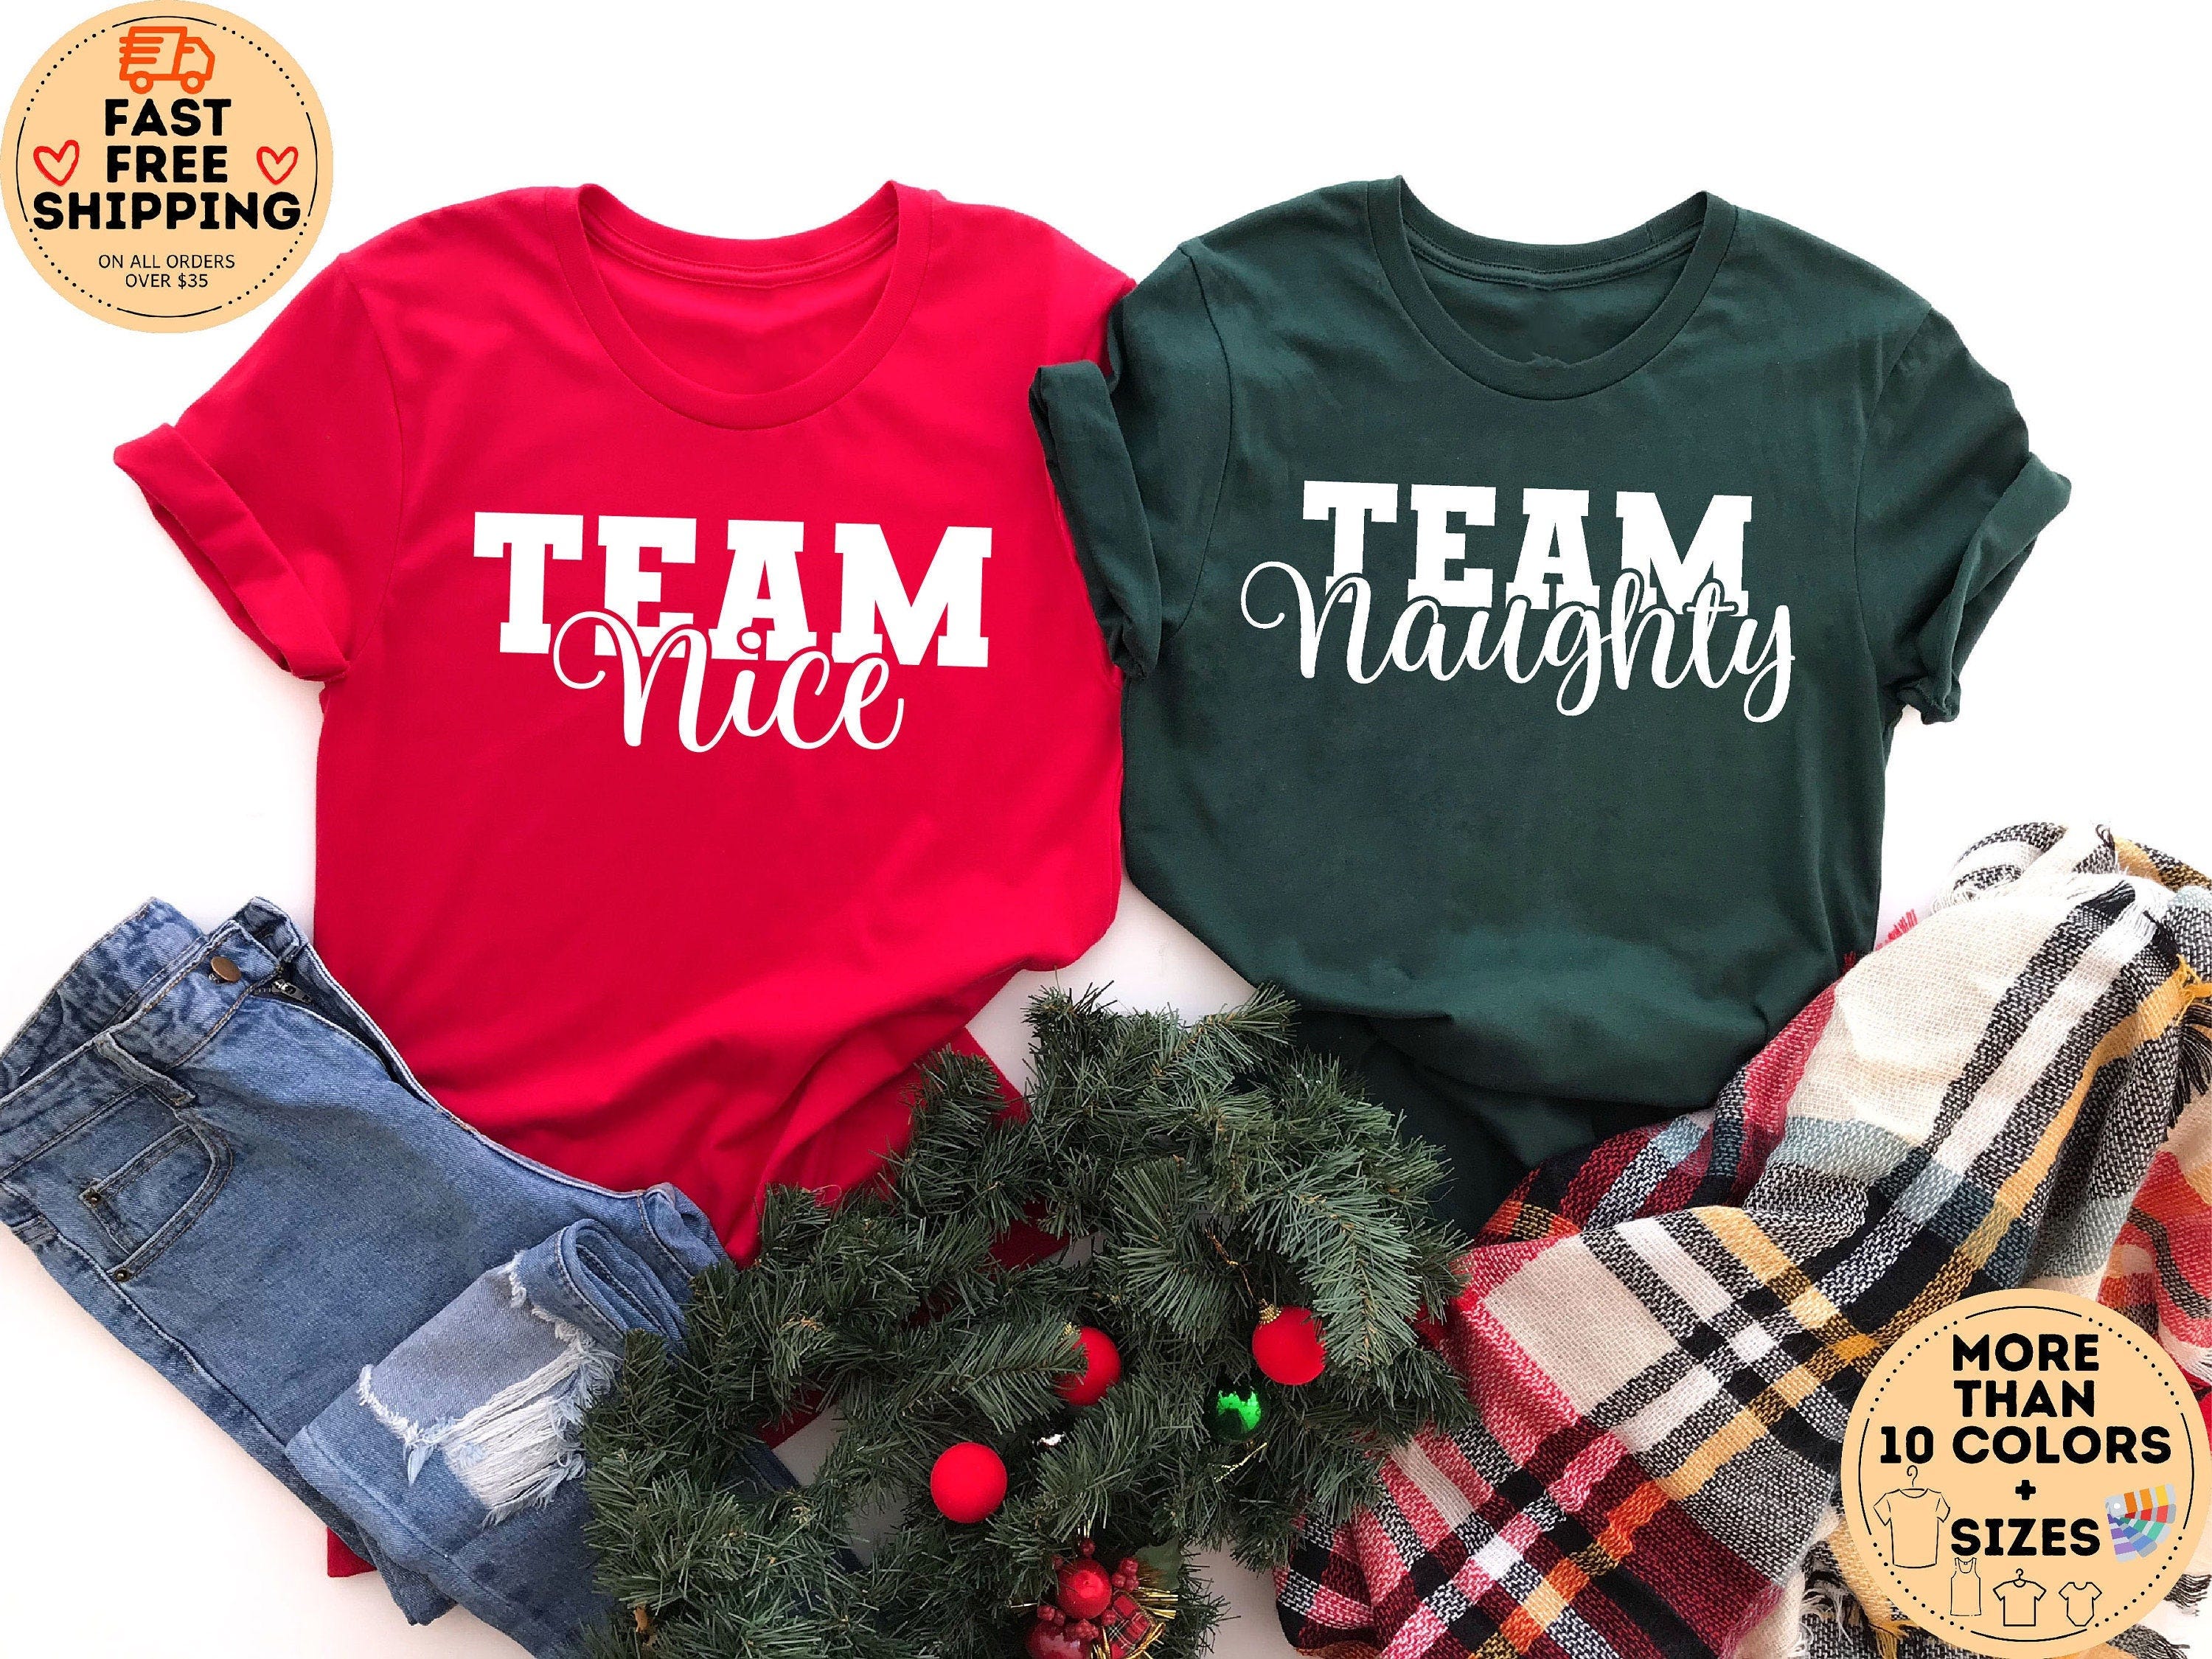 Team Nice Team Naughty shirt, Couple Christmas Tshirts, Couple Shirt, Funny Christmas Shirts, Matching Christmas Shirts, Xmas Pajamas